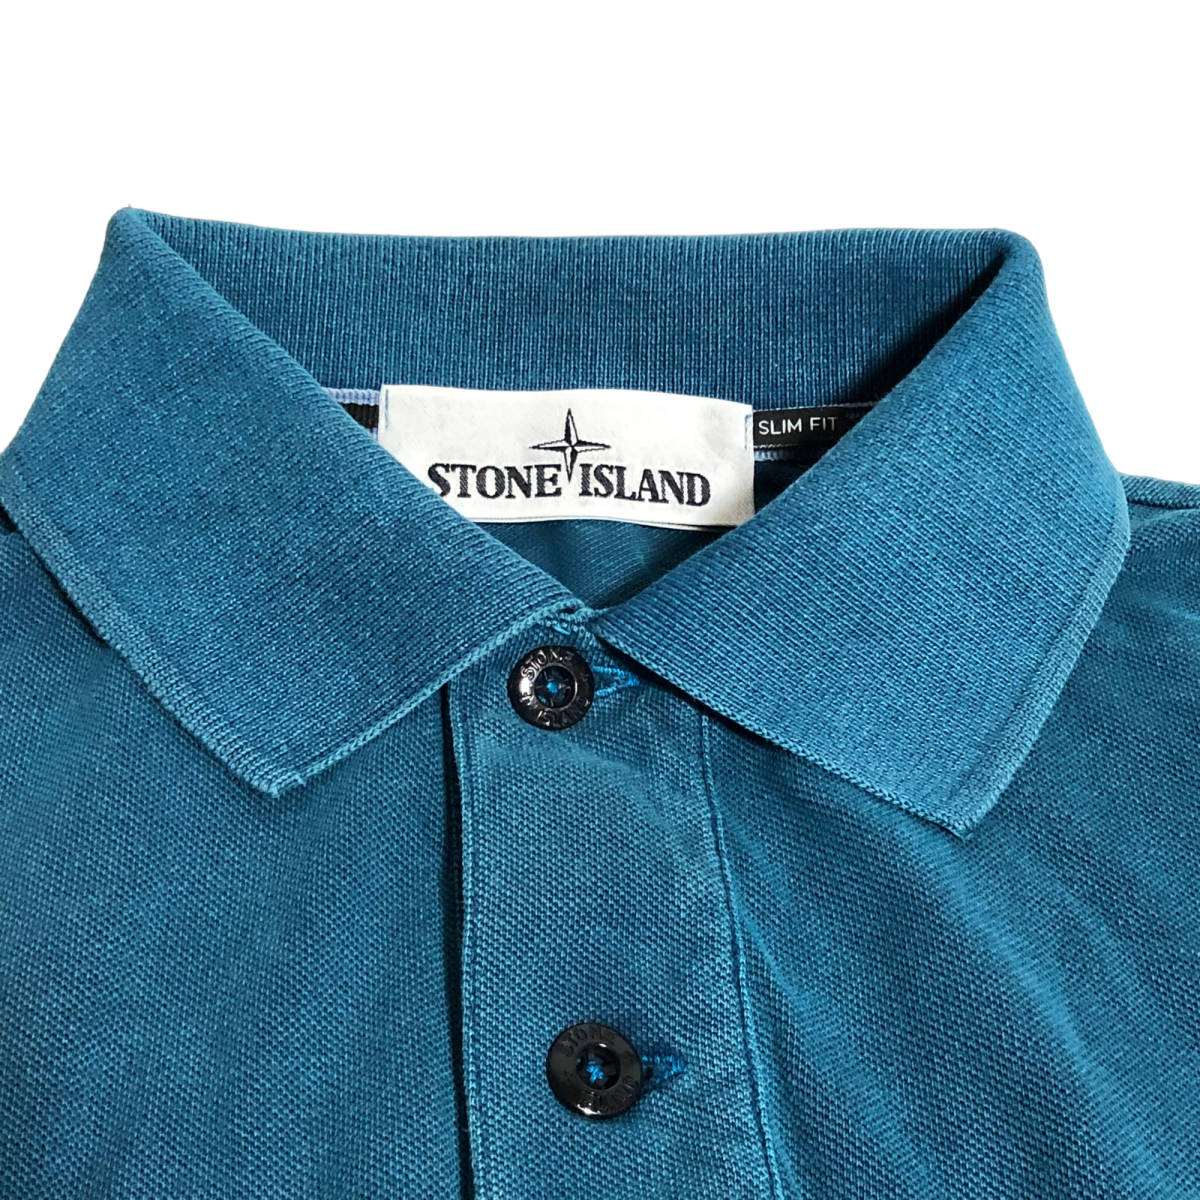 STONE ISLAND ストーンアイランド SLIM FIT ポロシャツ S ブルー メンズ A9_画像4